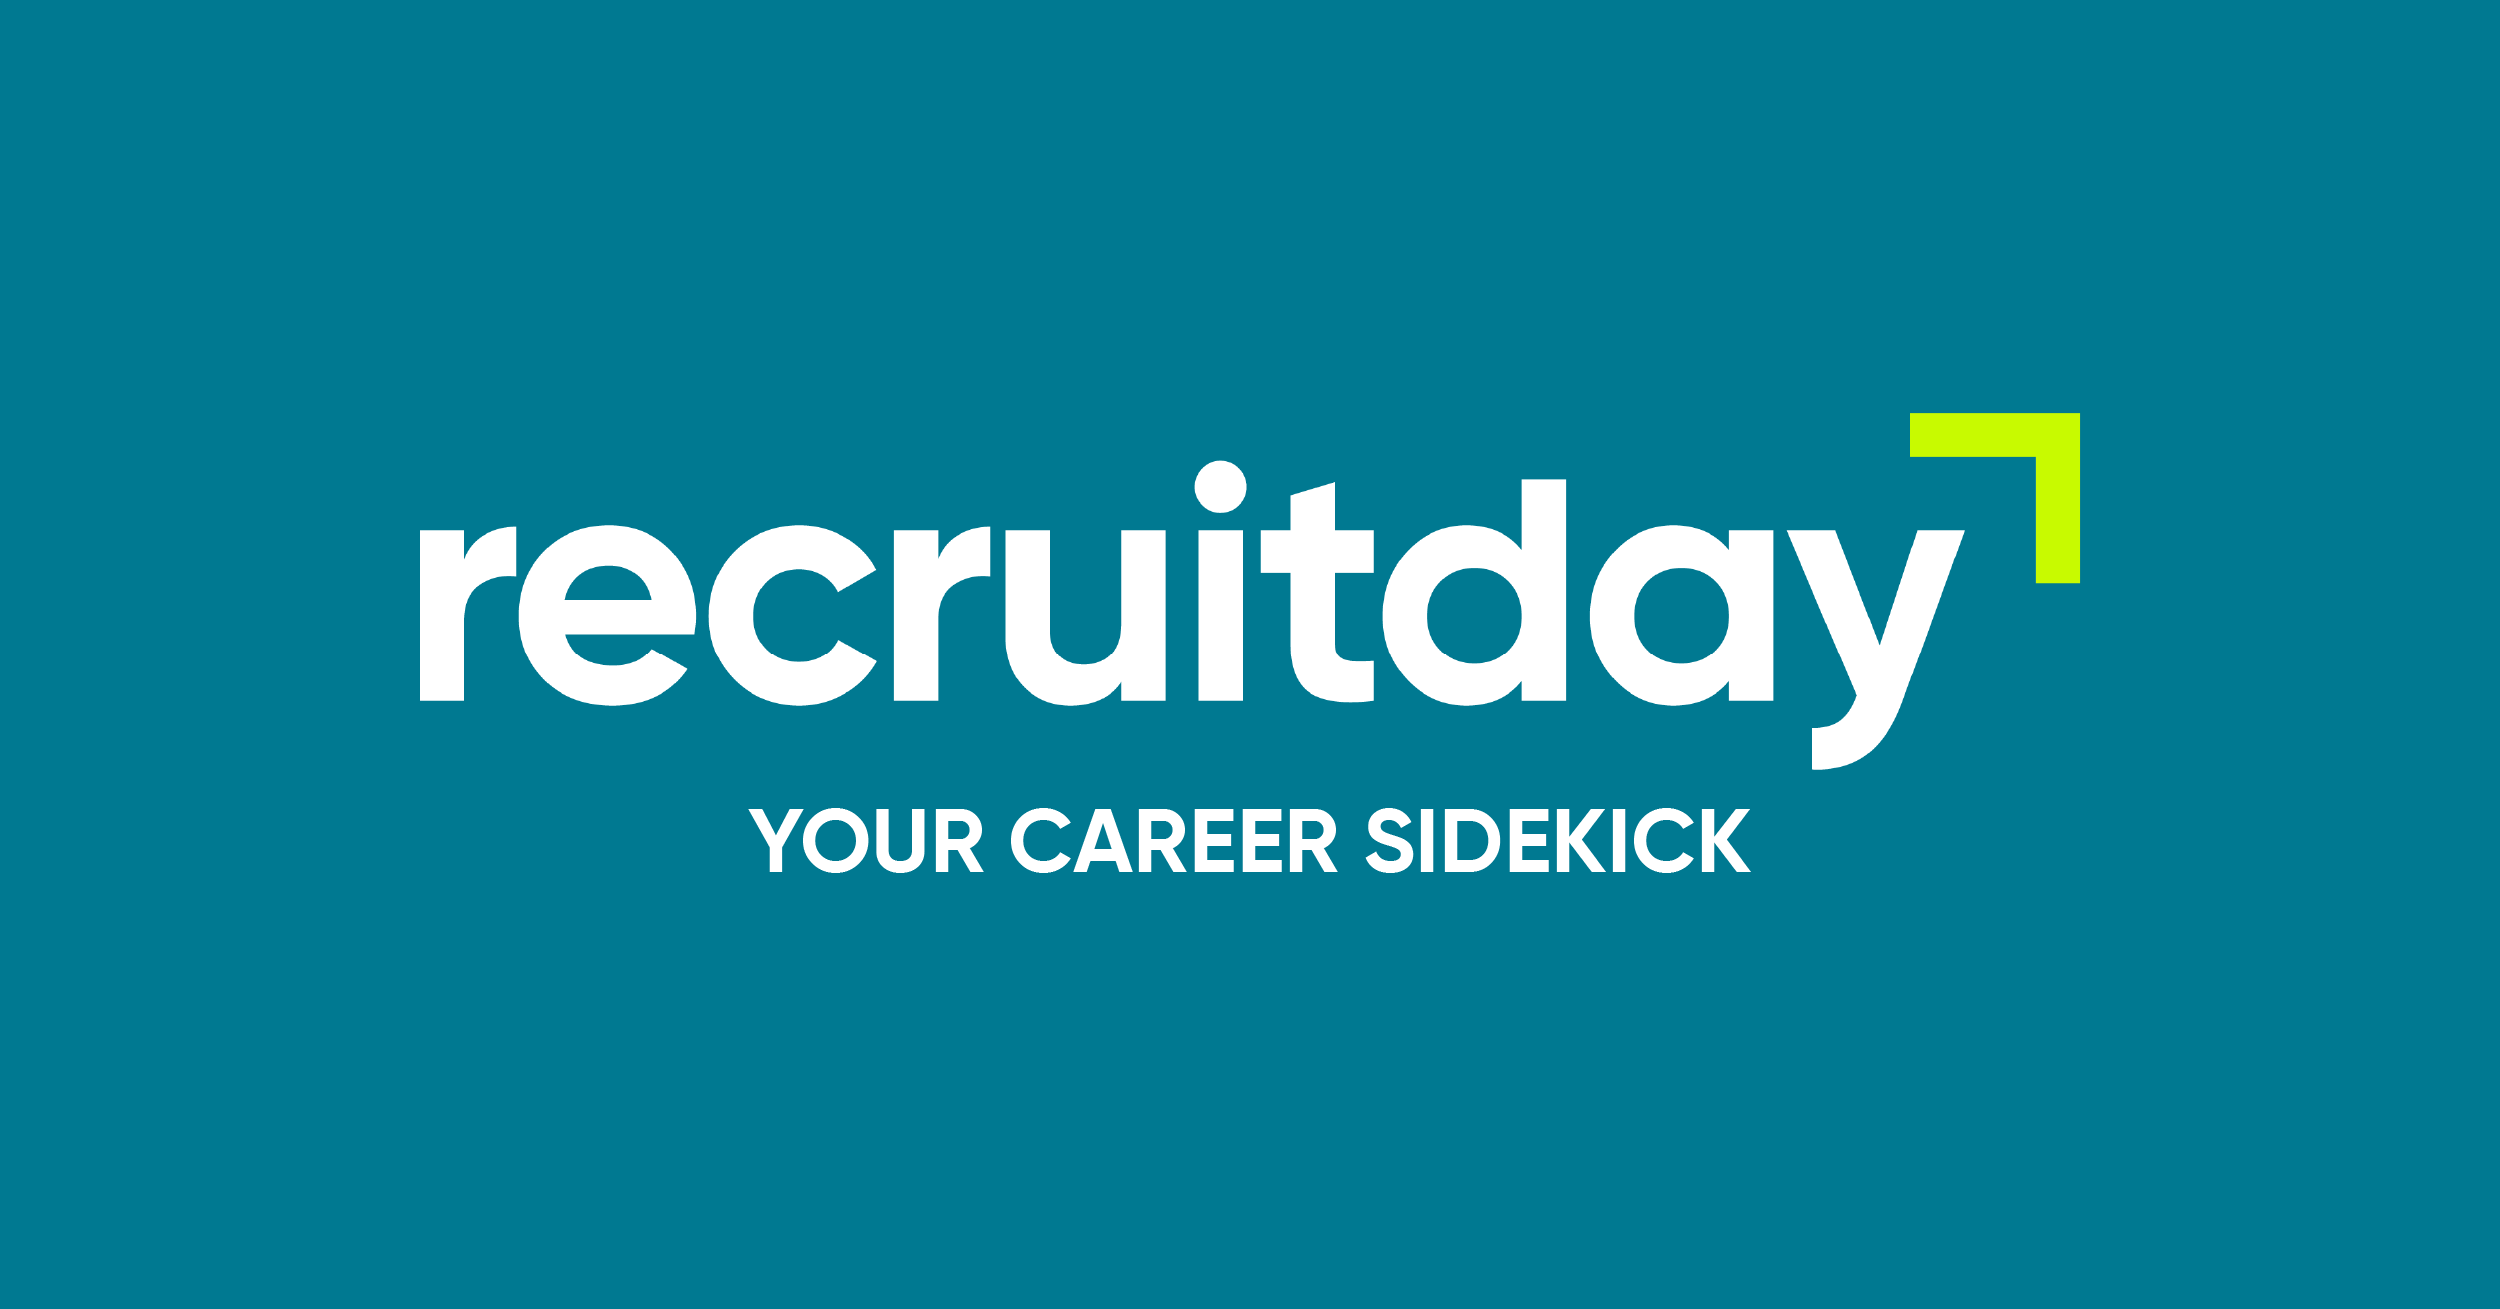 recruitday.com